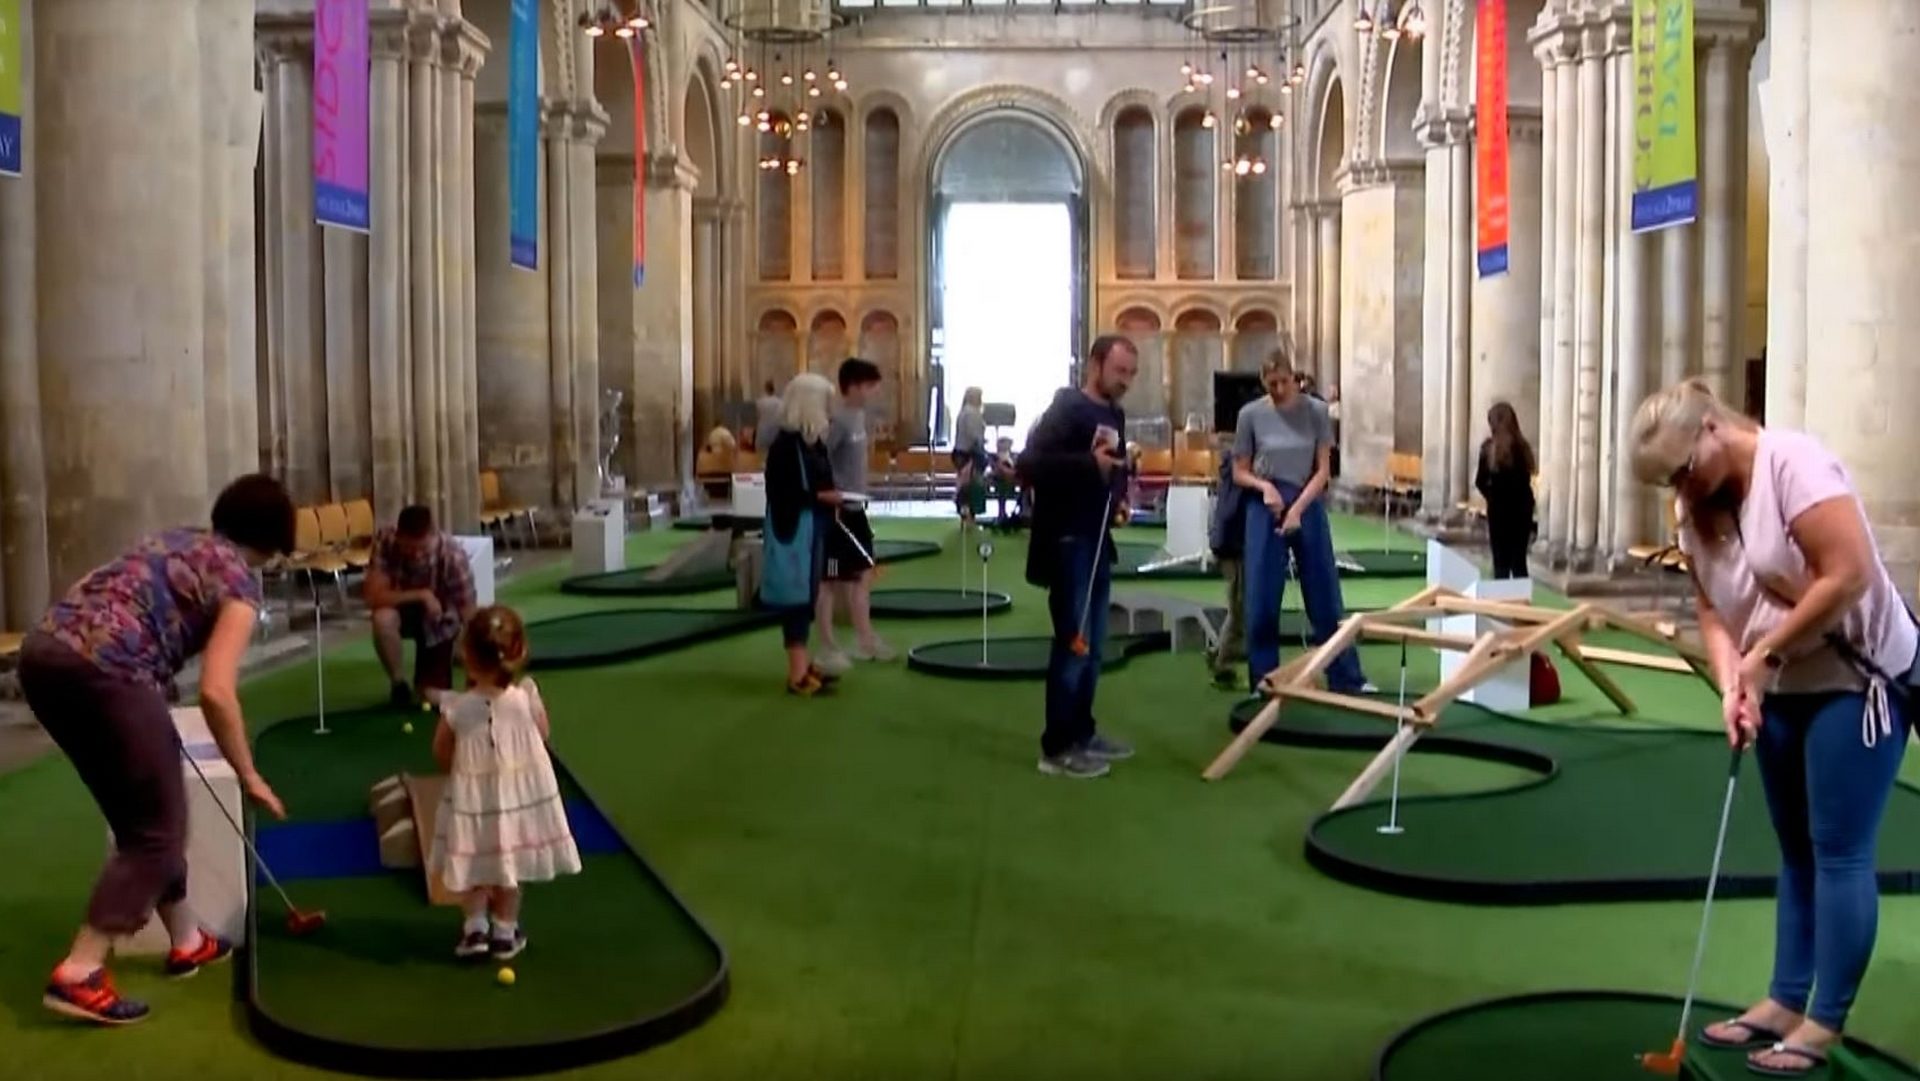 La cathédrale anglicane de Rochester transformée en minigolf         | capture d'écran Youtube